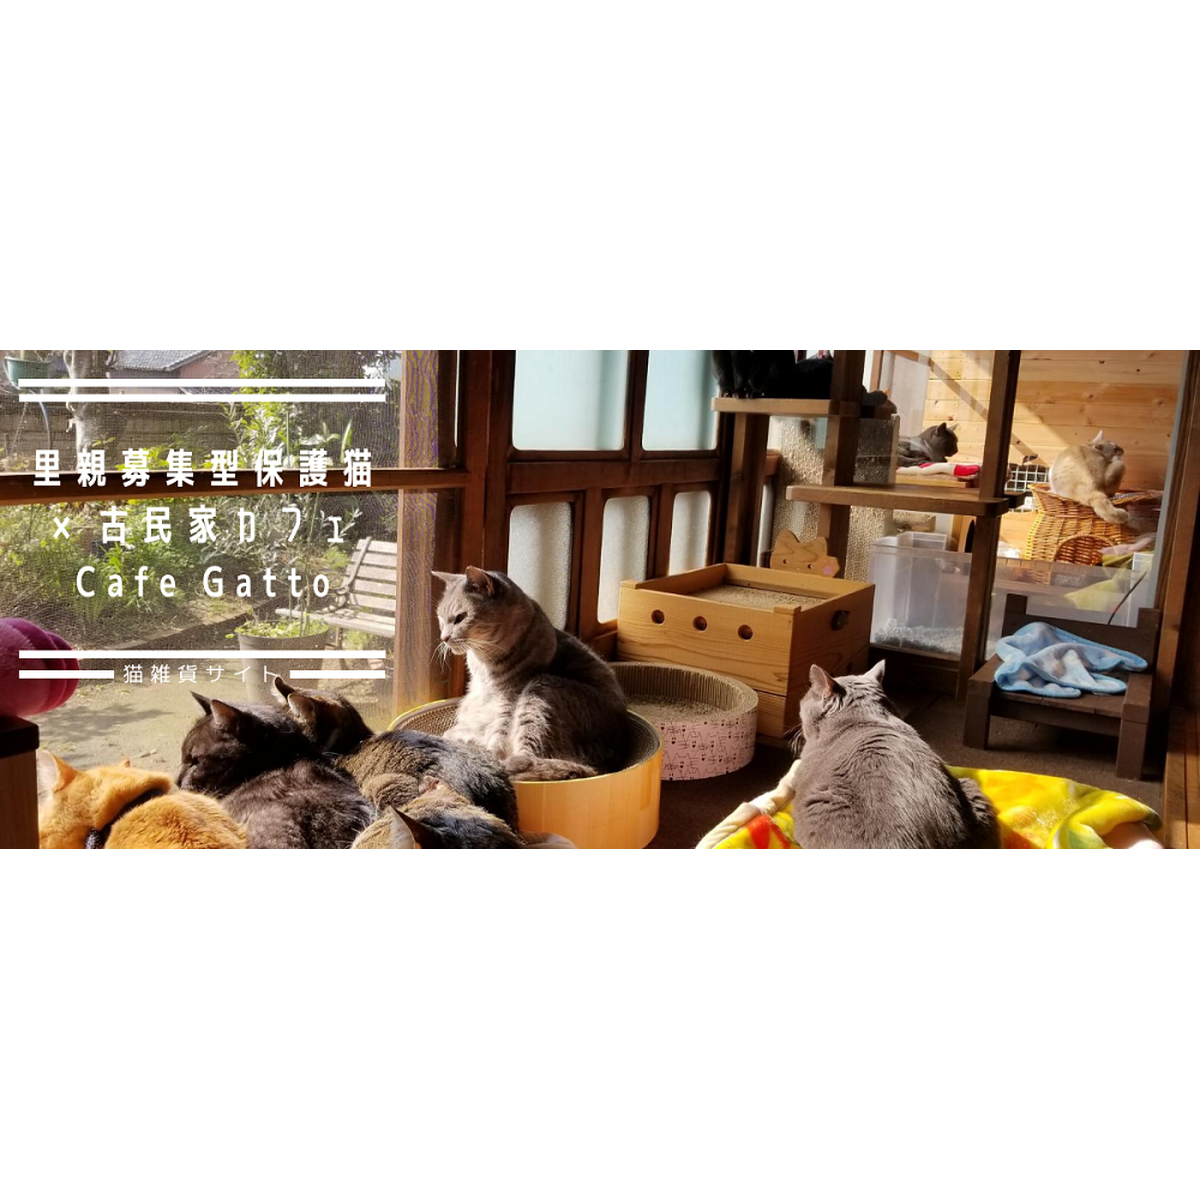 福岡の猫カフェ里親募集型保護猫 古民家 Cafe Gatto